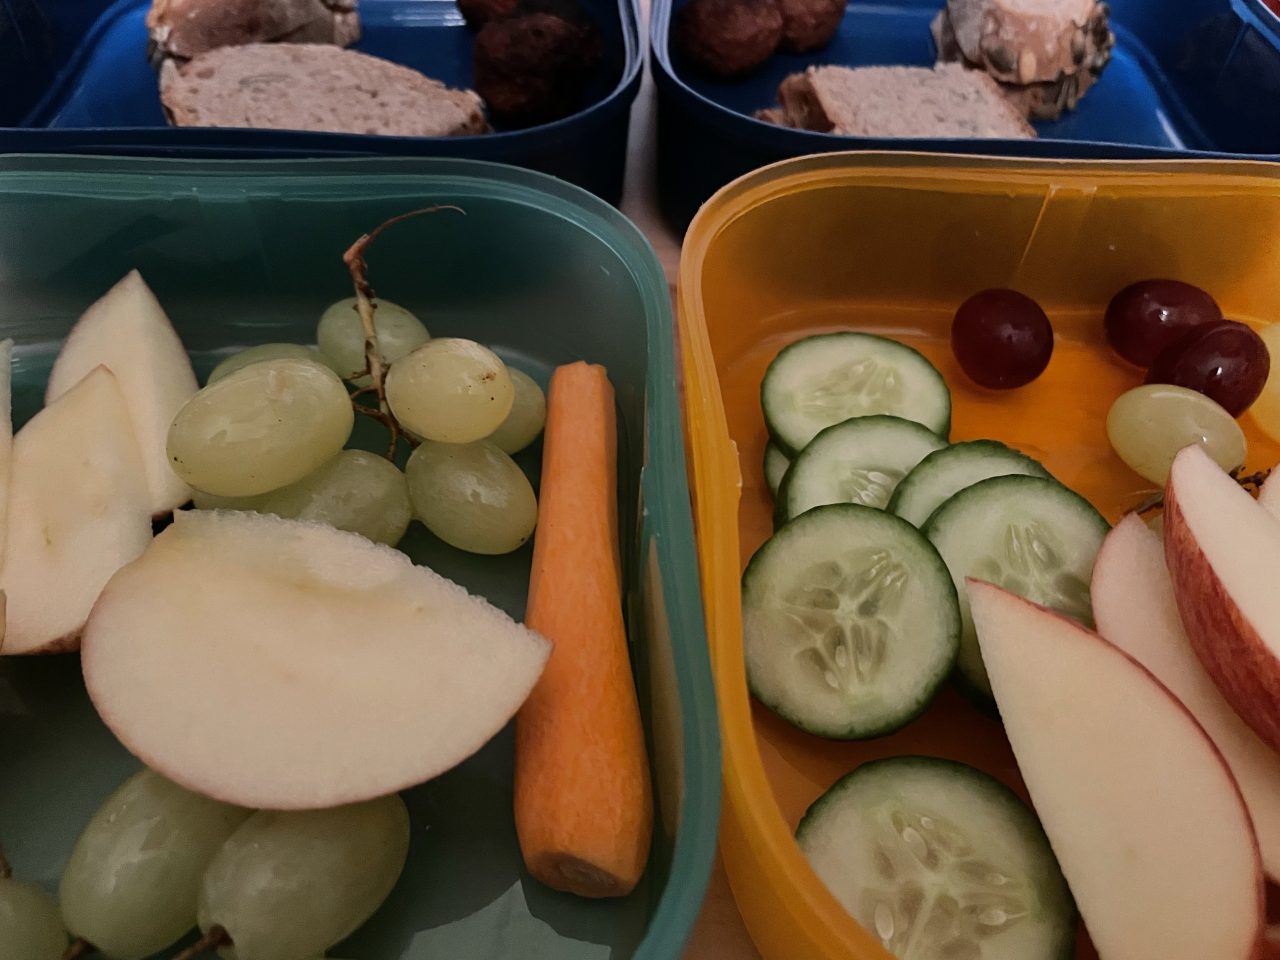 vier Teile von zwei Brotdosen neben und übereinander angeordnet und gefüllt mit Obst, Gemüse und Broten